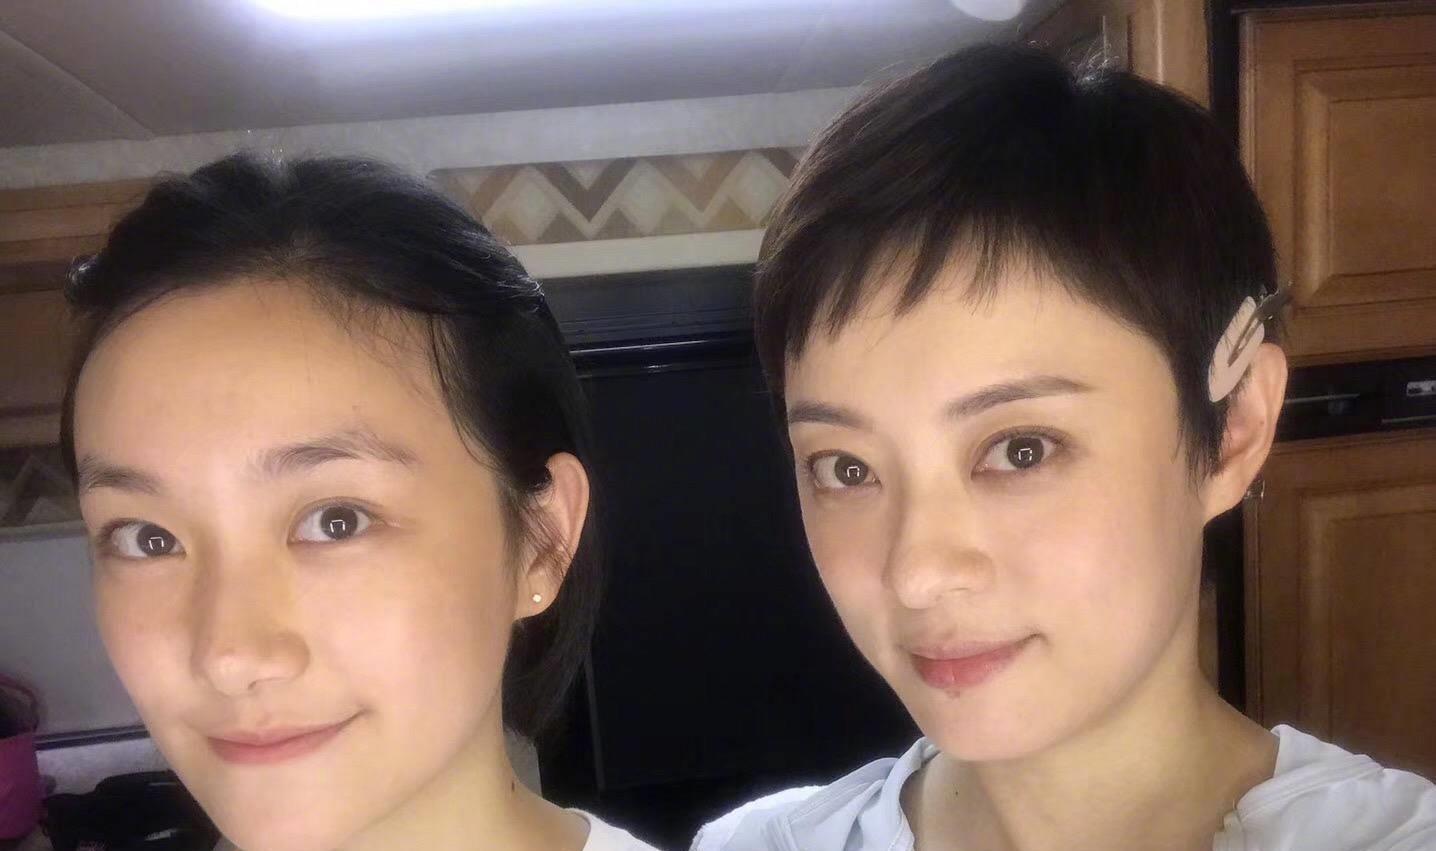 在孙俪和妹妹孙艳的合影中,姐妹俩的眼睛简直长得一模一样